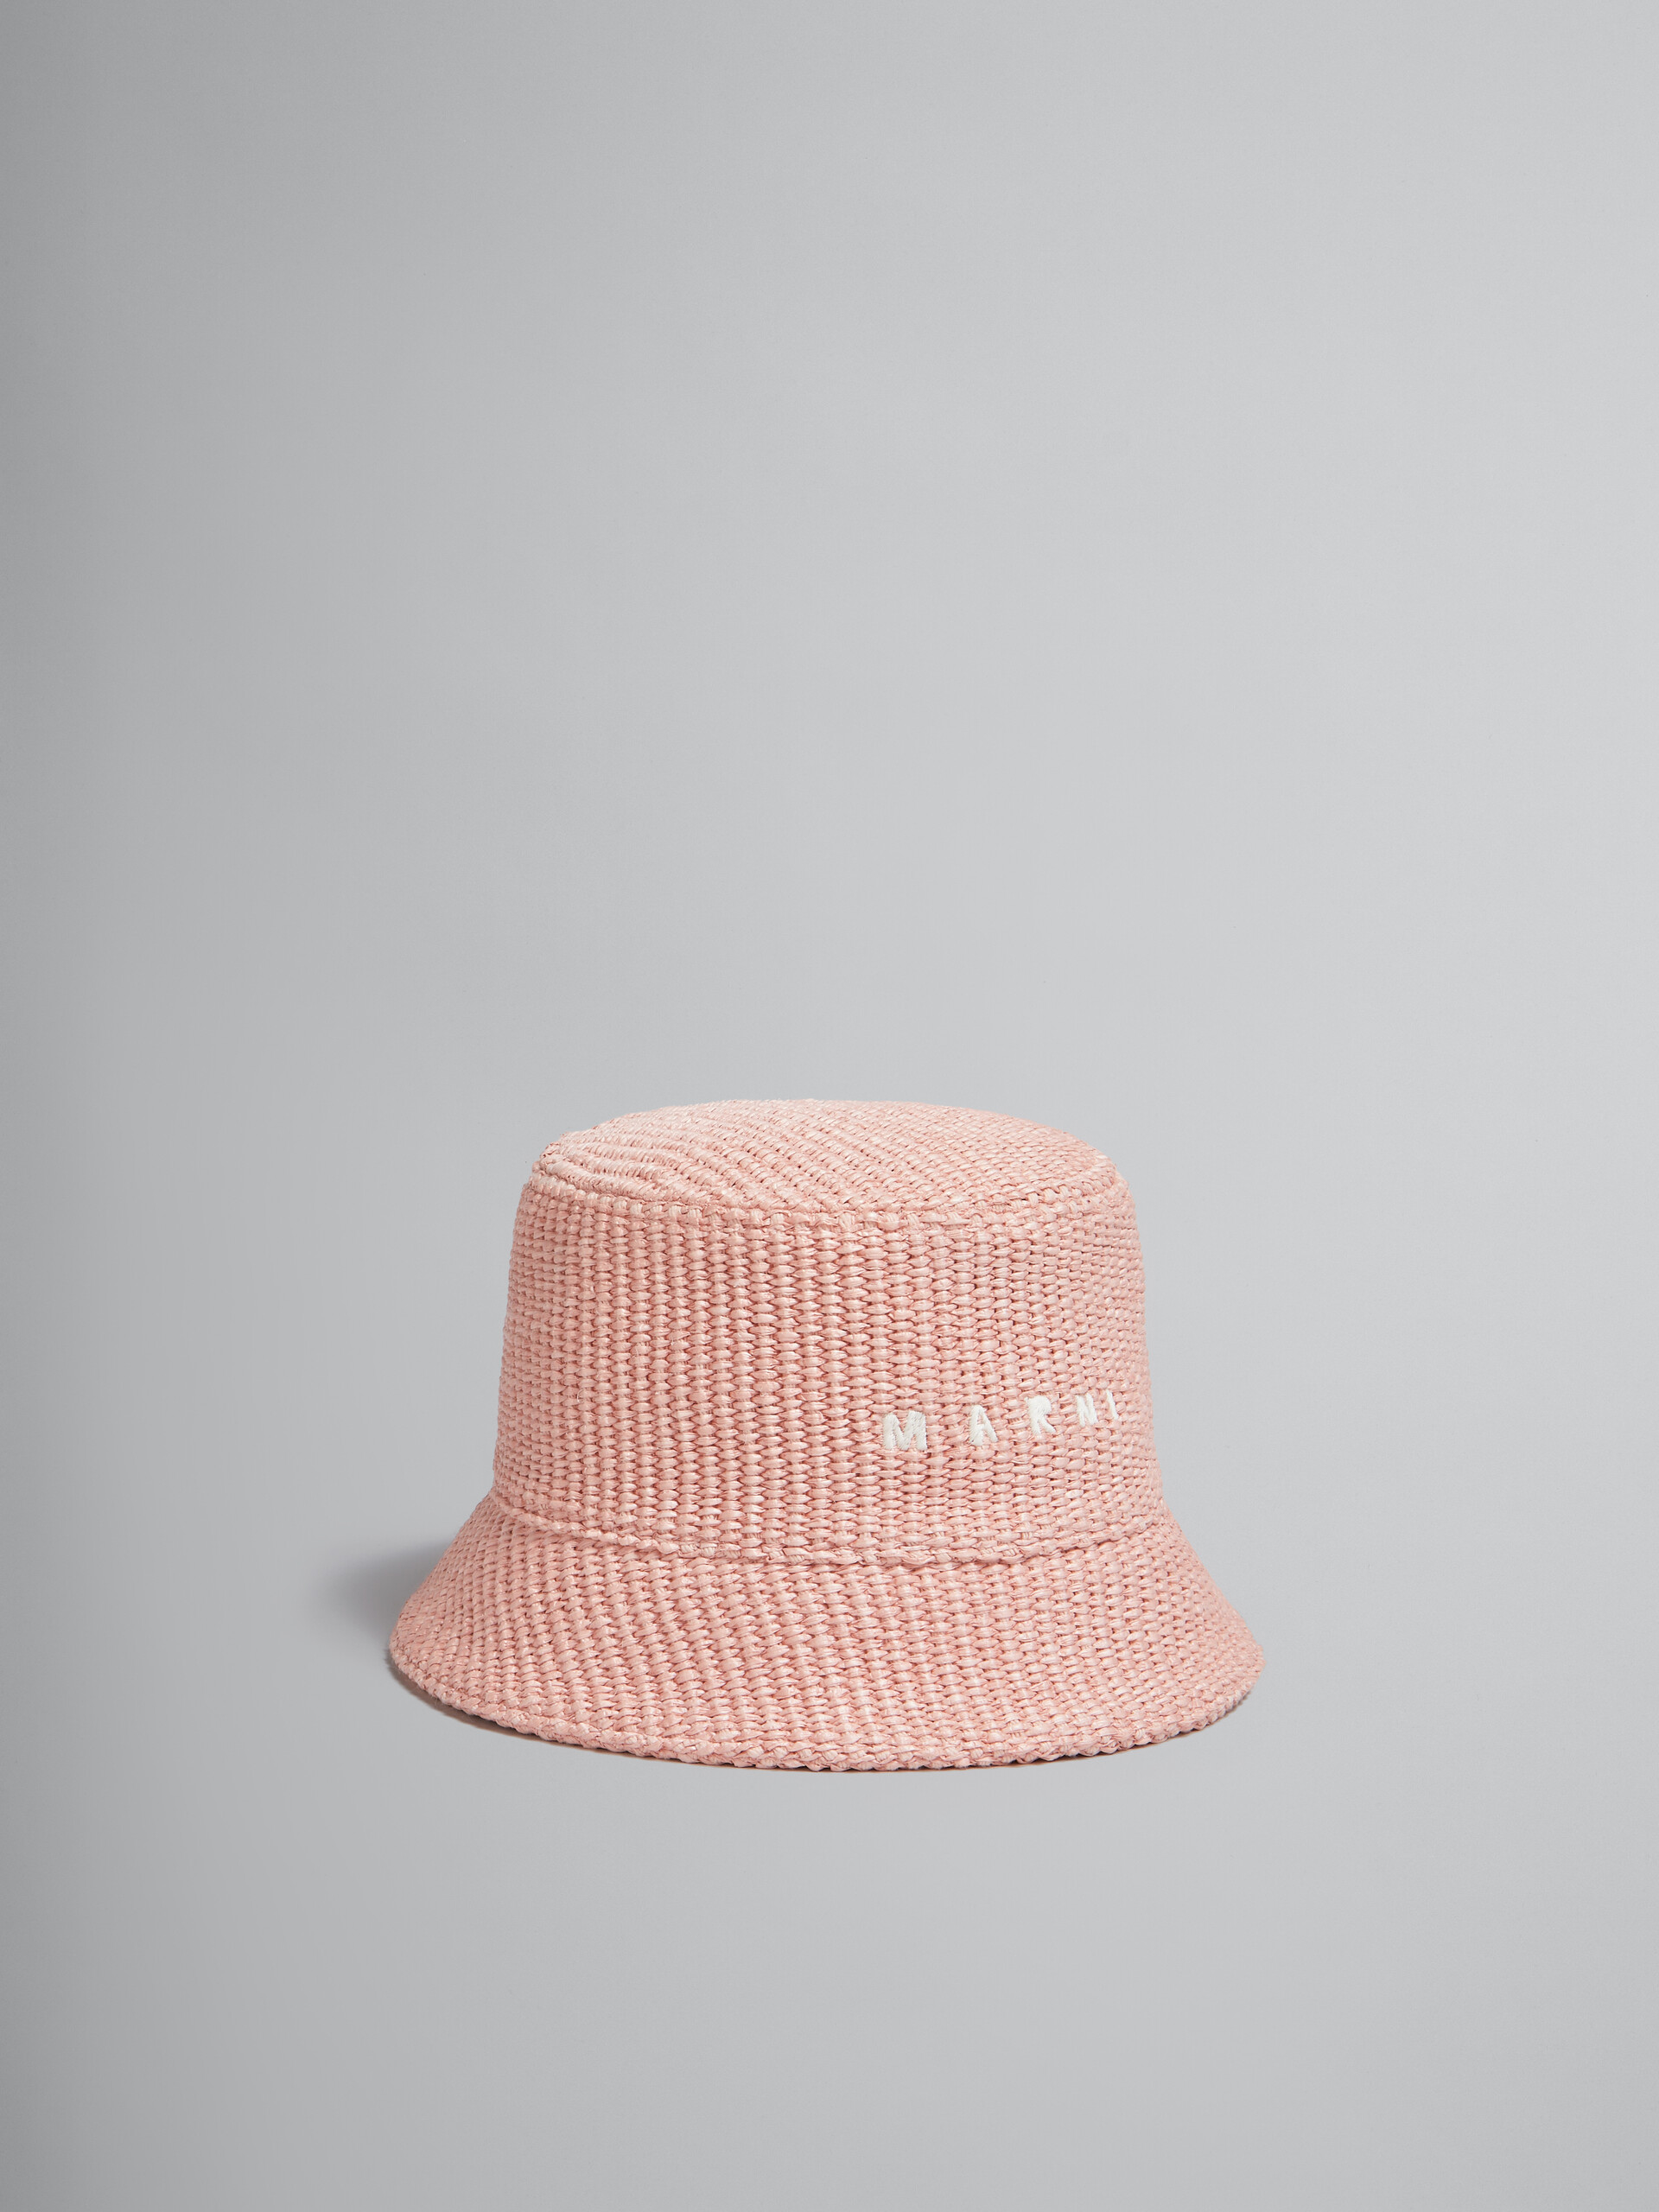 Cappello bucket rosa in tessuto effetto rafia con logo ricamato - Cappelli - Image 1